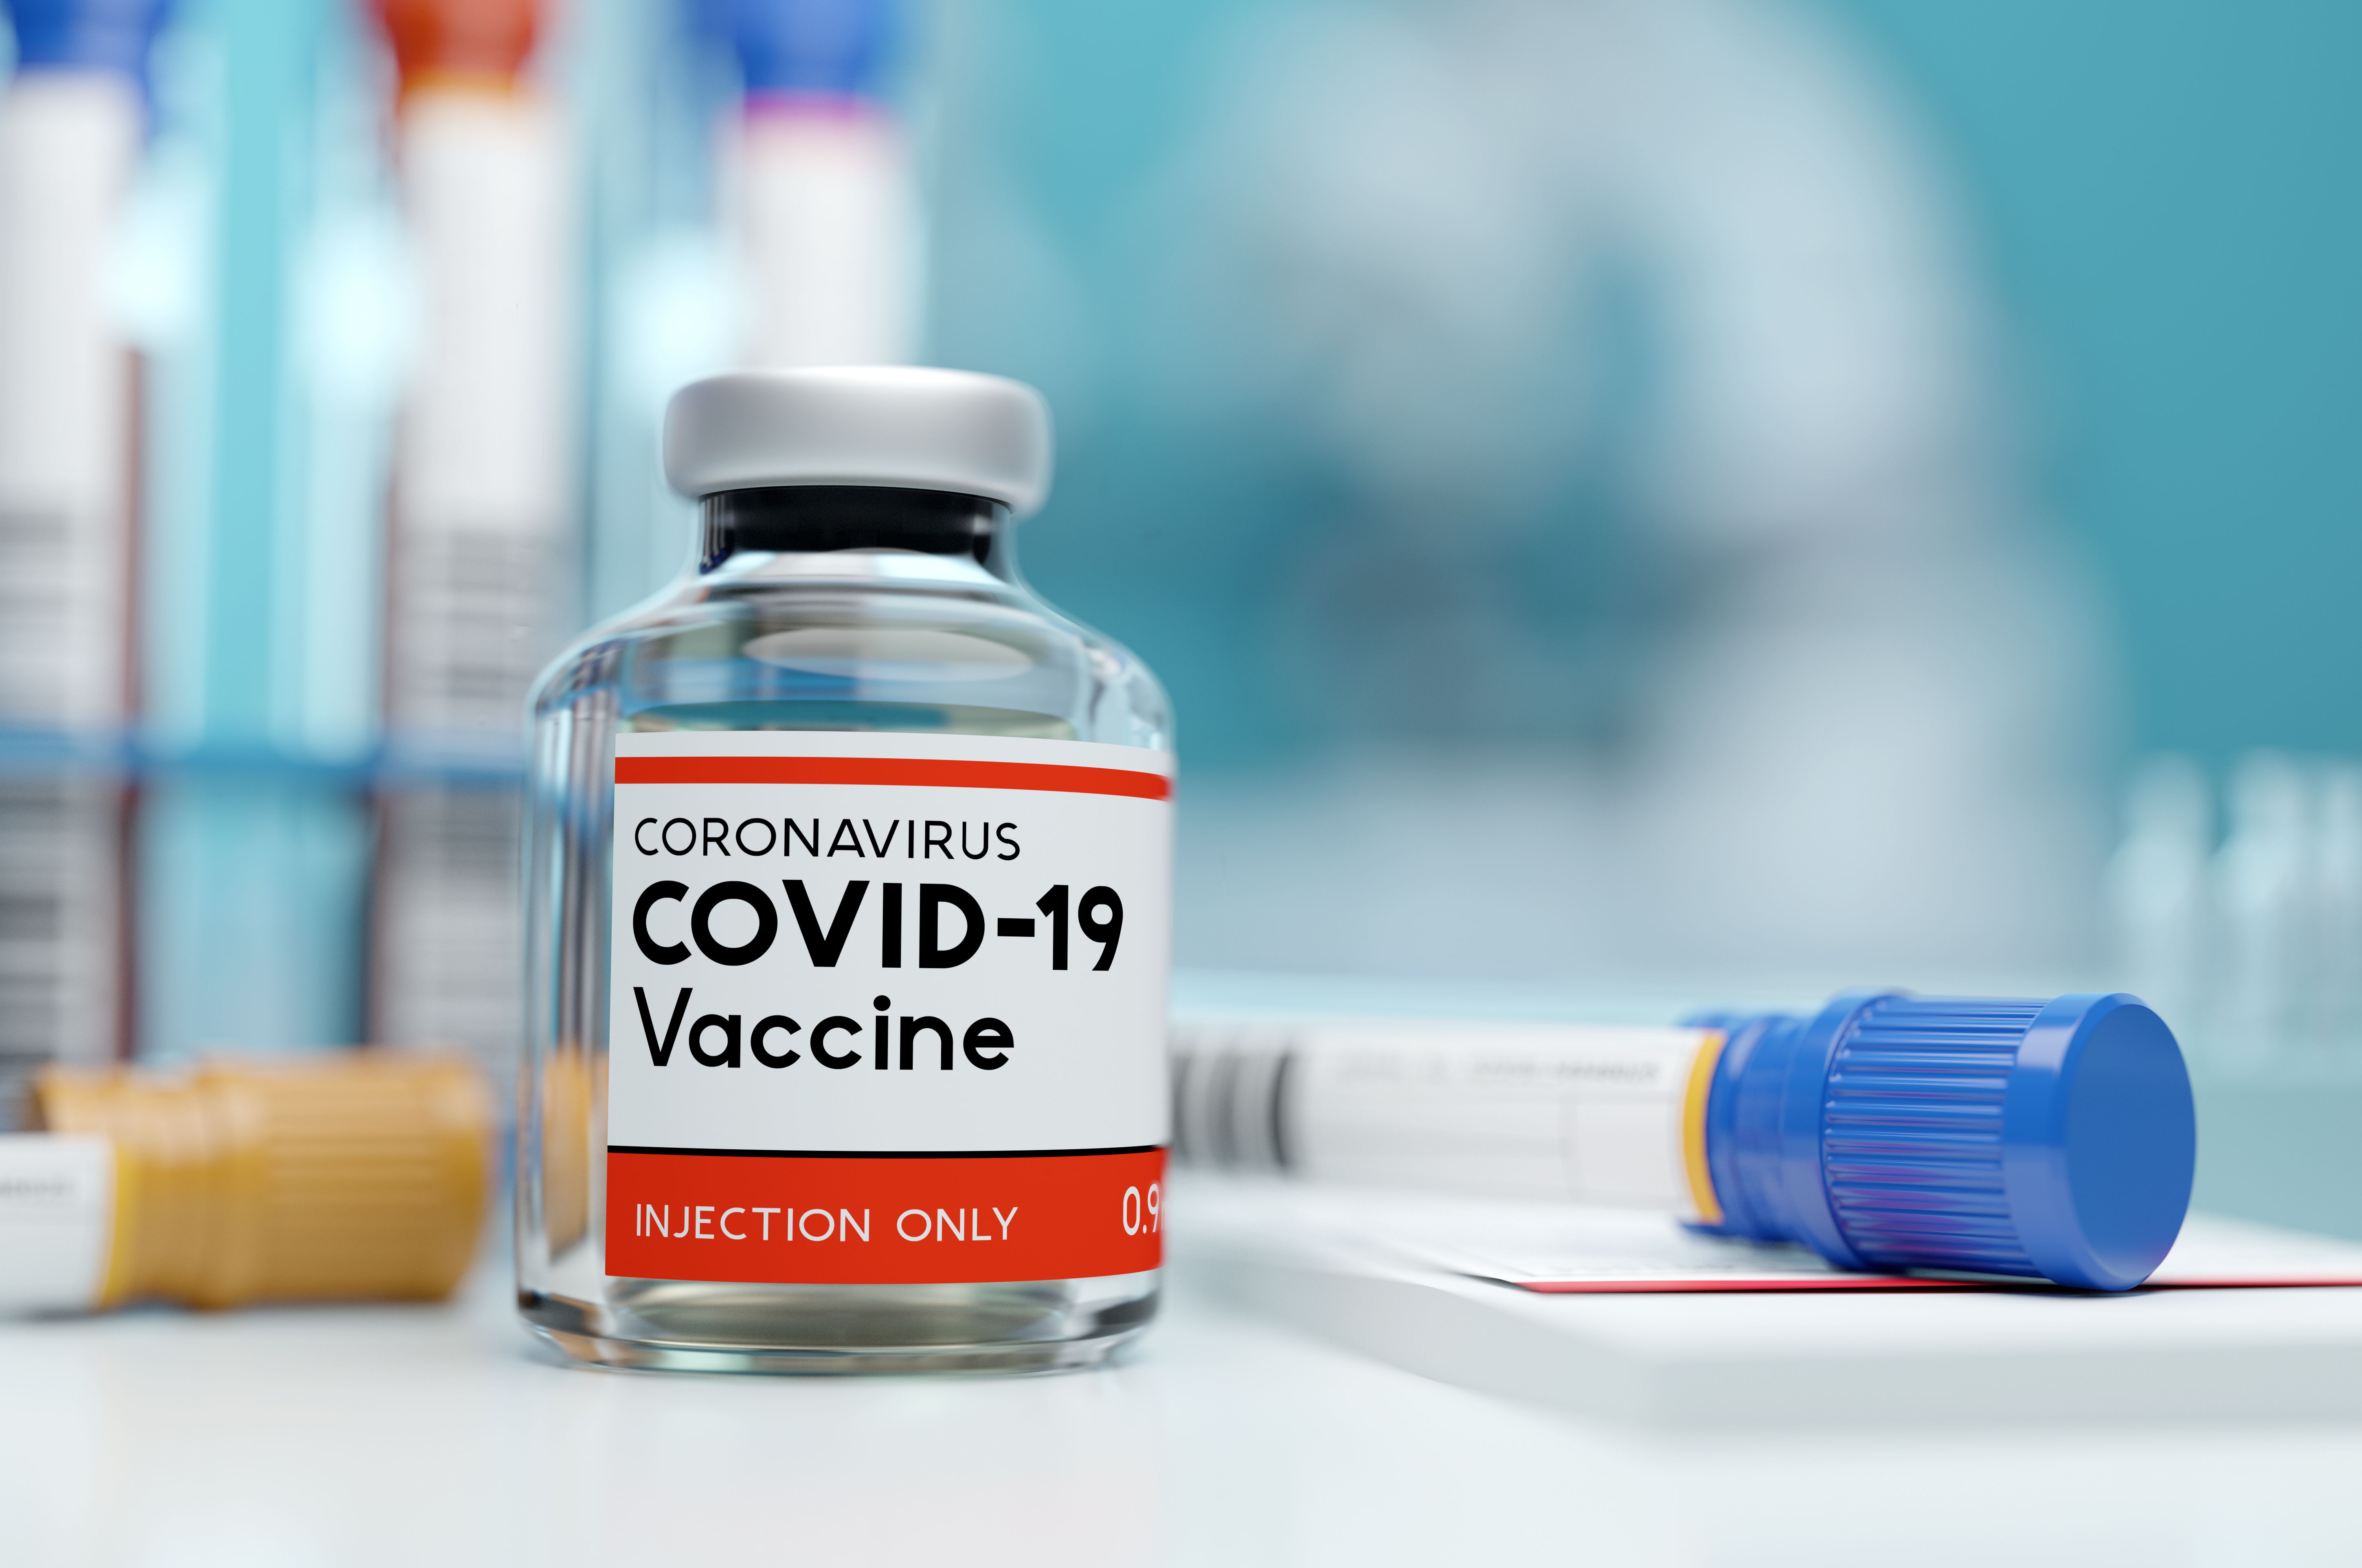 Przekonać społeczeństwo do zaszczepienia się przeciw wirusowi COVID-19 to droga lepszej edukacji (fot. Shutterstock)